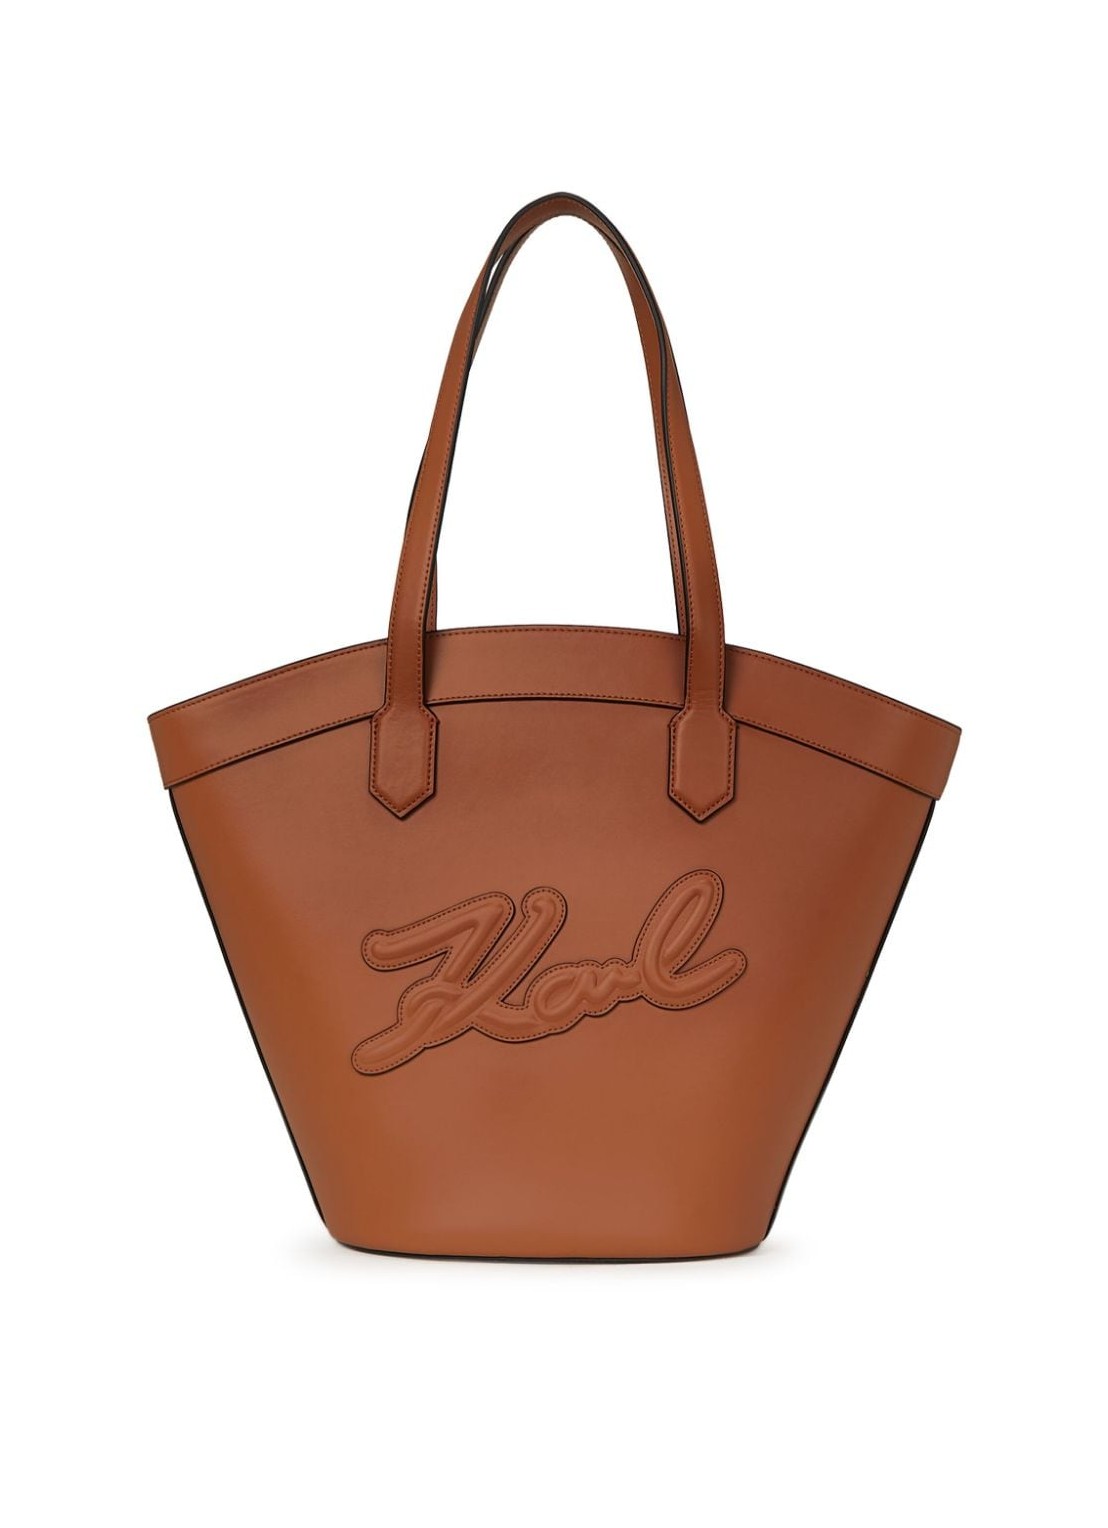 Handbag karl lagerfeld handbag womank/signature tulip md tote - 241w3015 a774 talla T/U
 